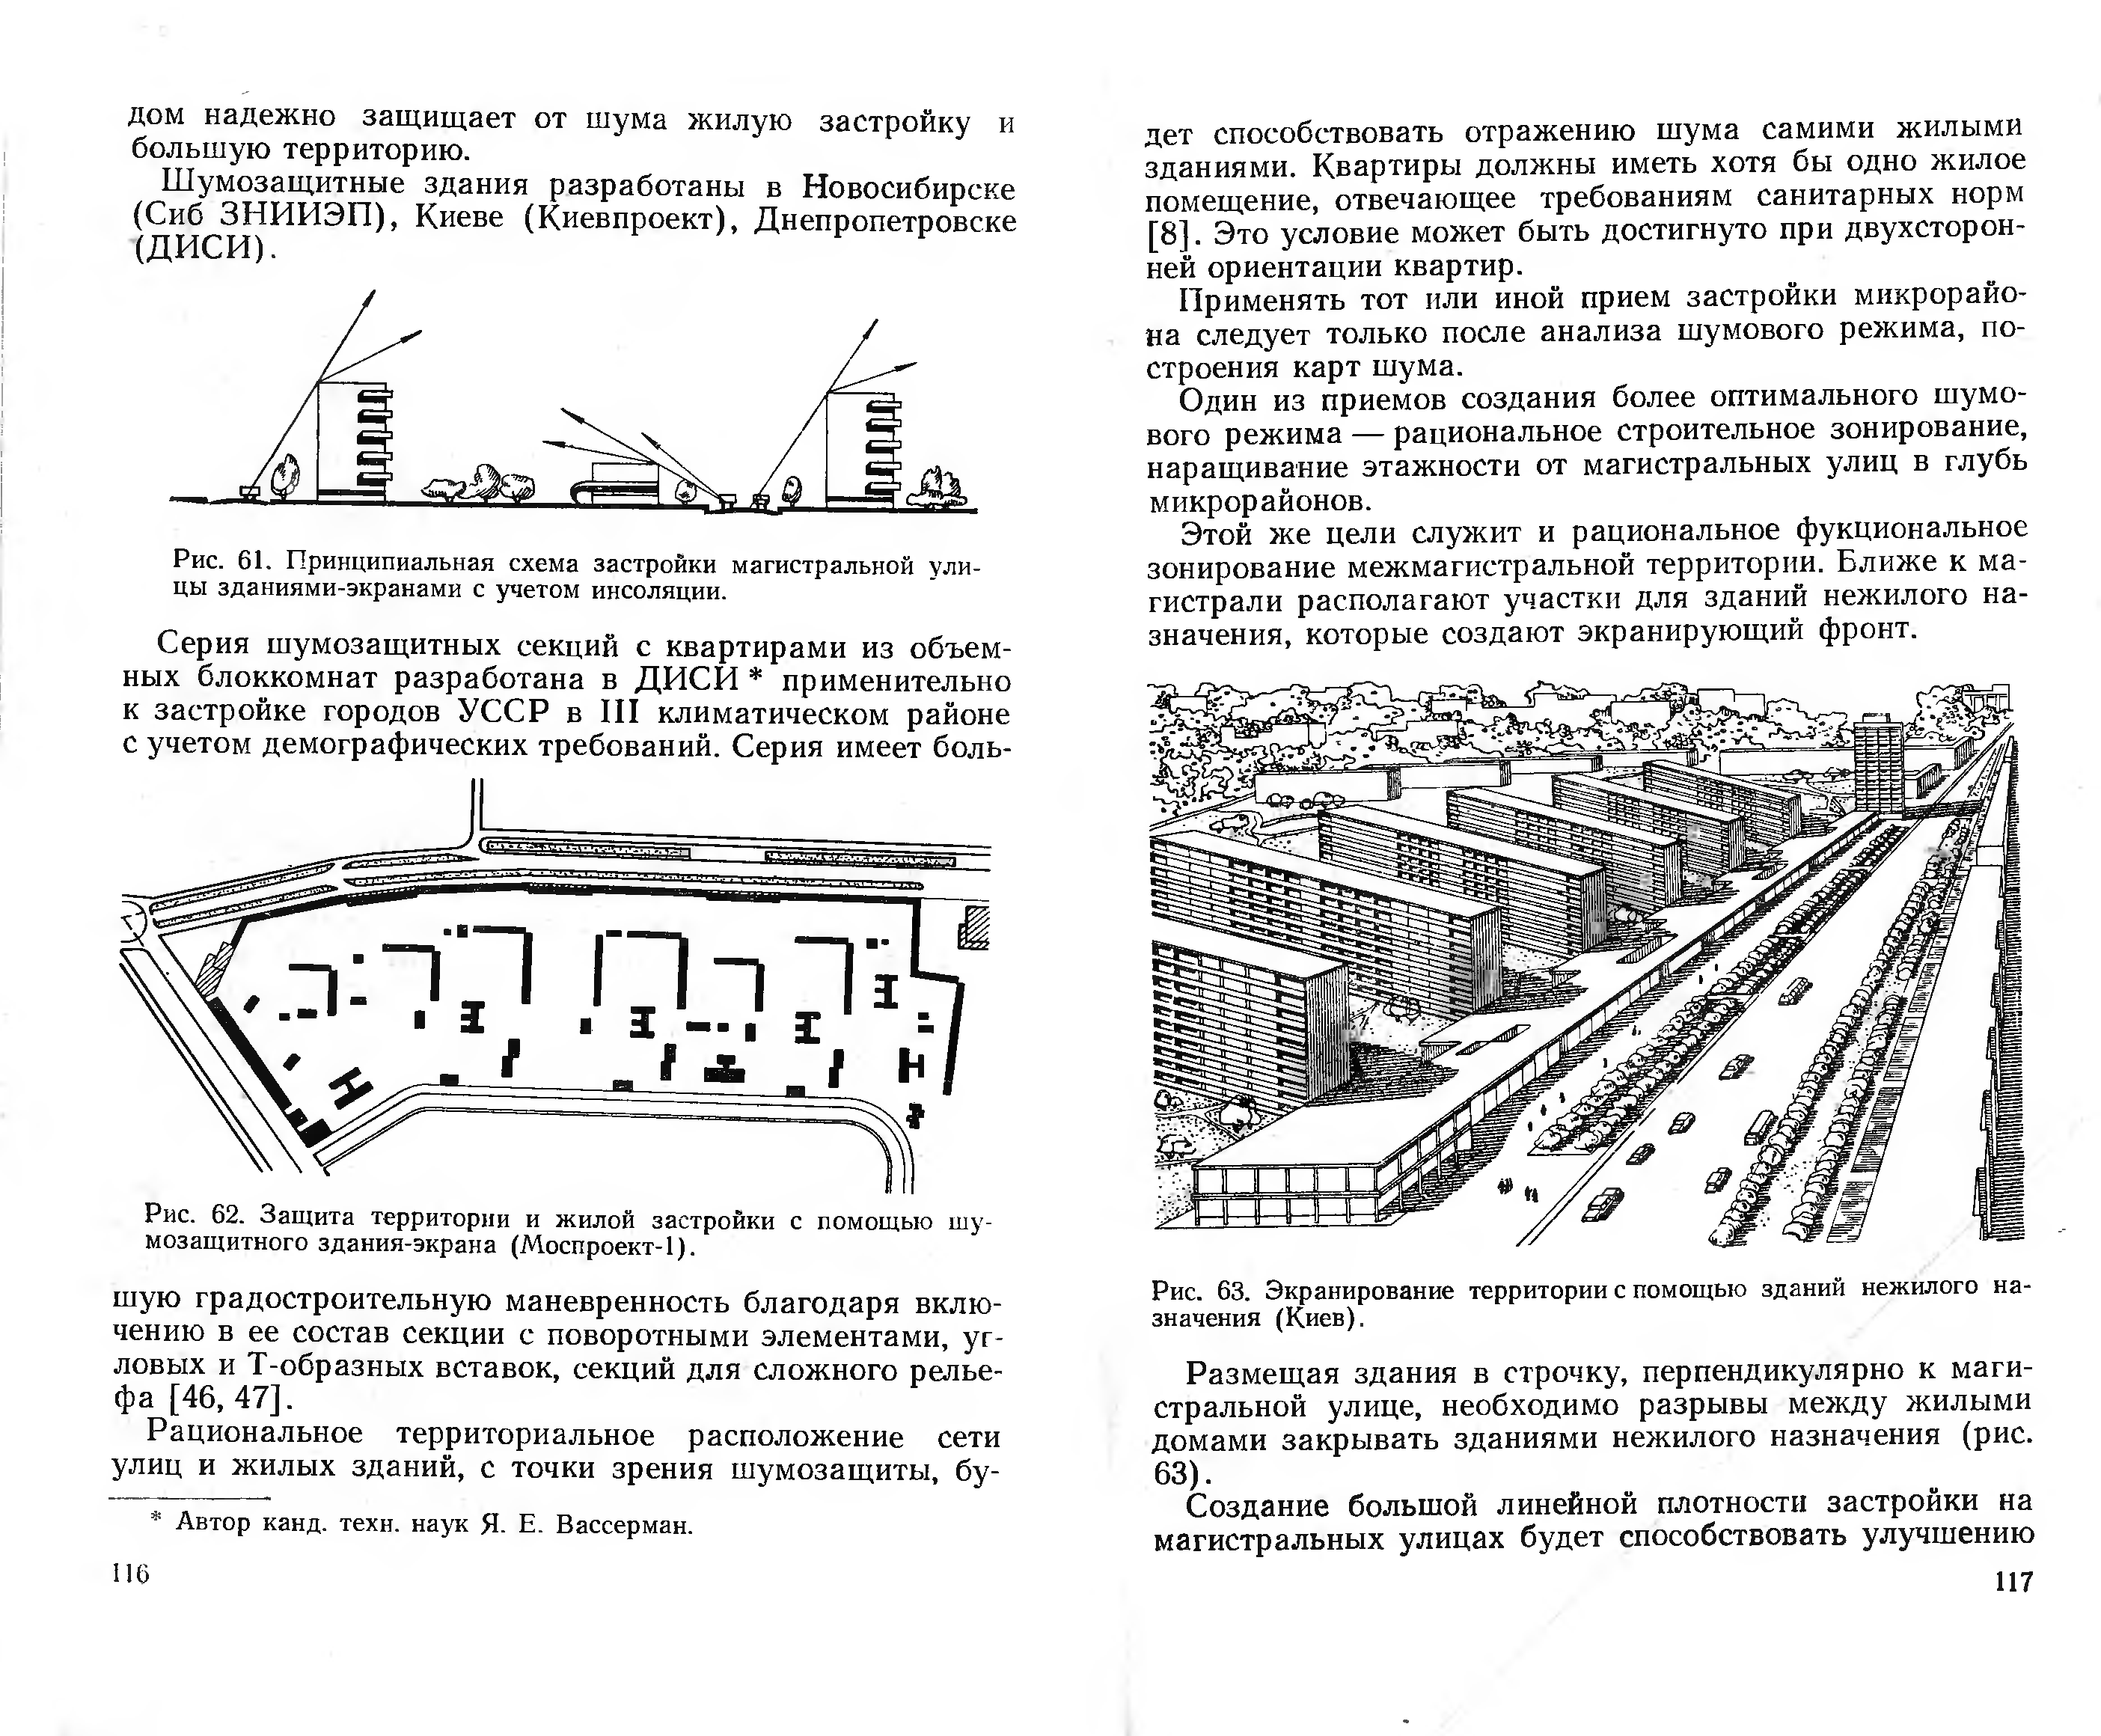 Борьба с шумом в градостроительстве / Е. П. Самойлюк. — Киев : Издательство «Будівельник», 1975